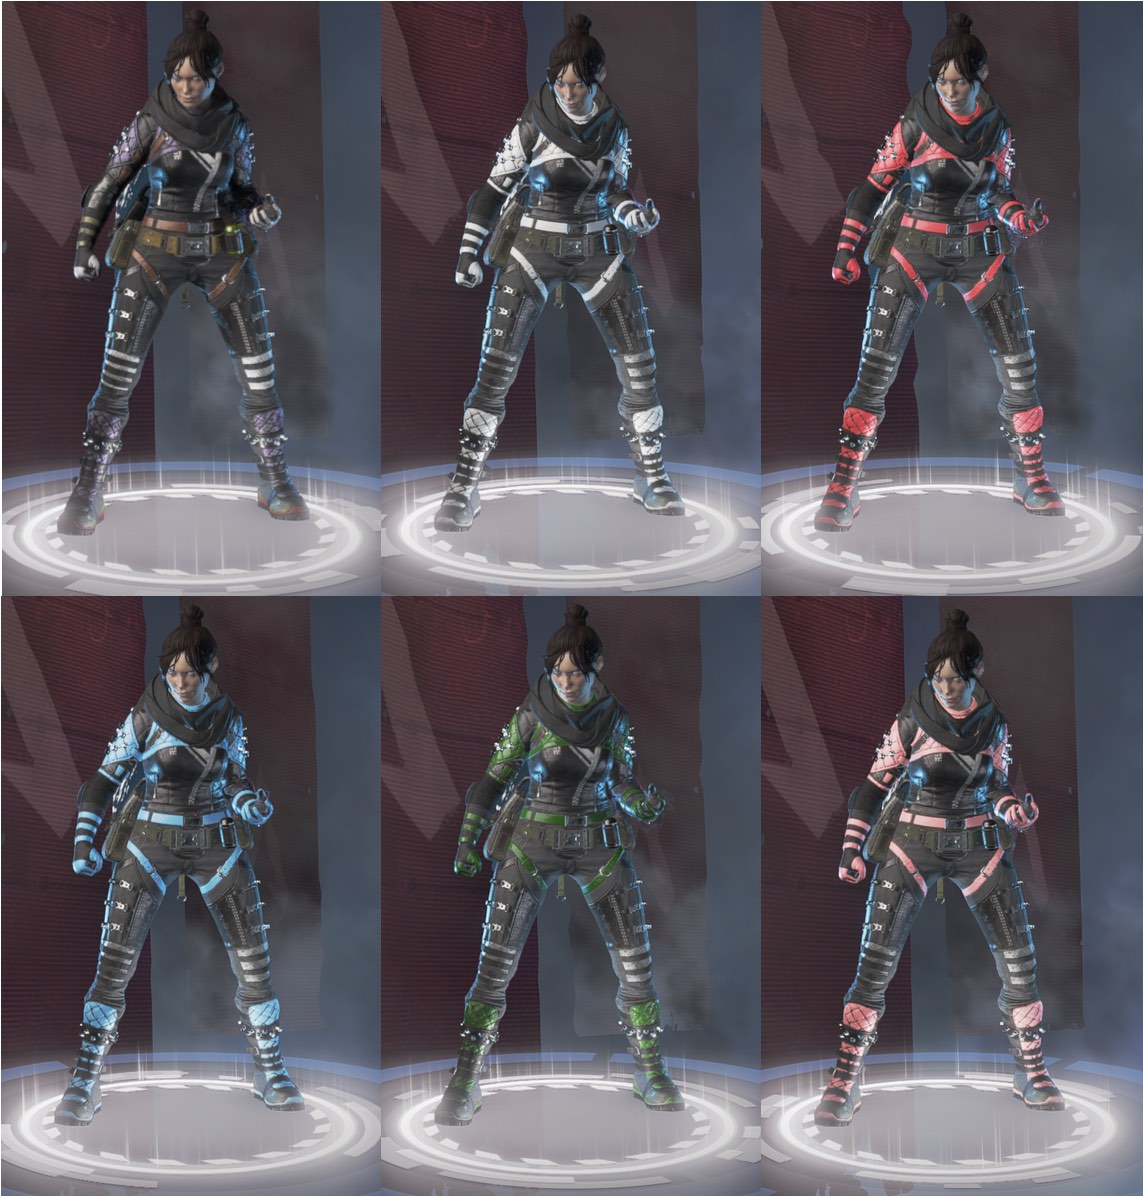 The Rarest Wraith skins